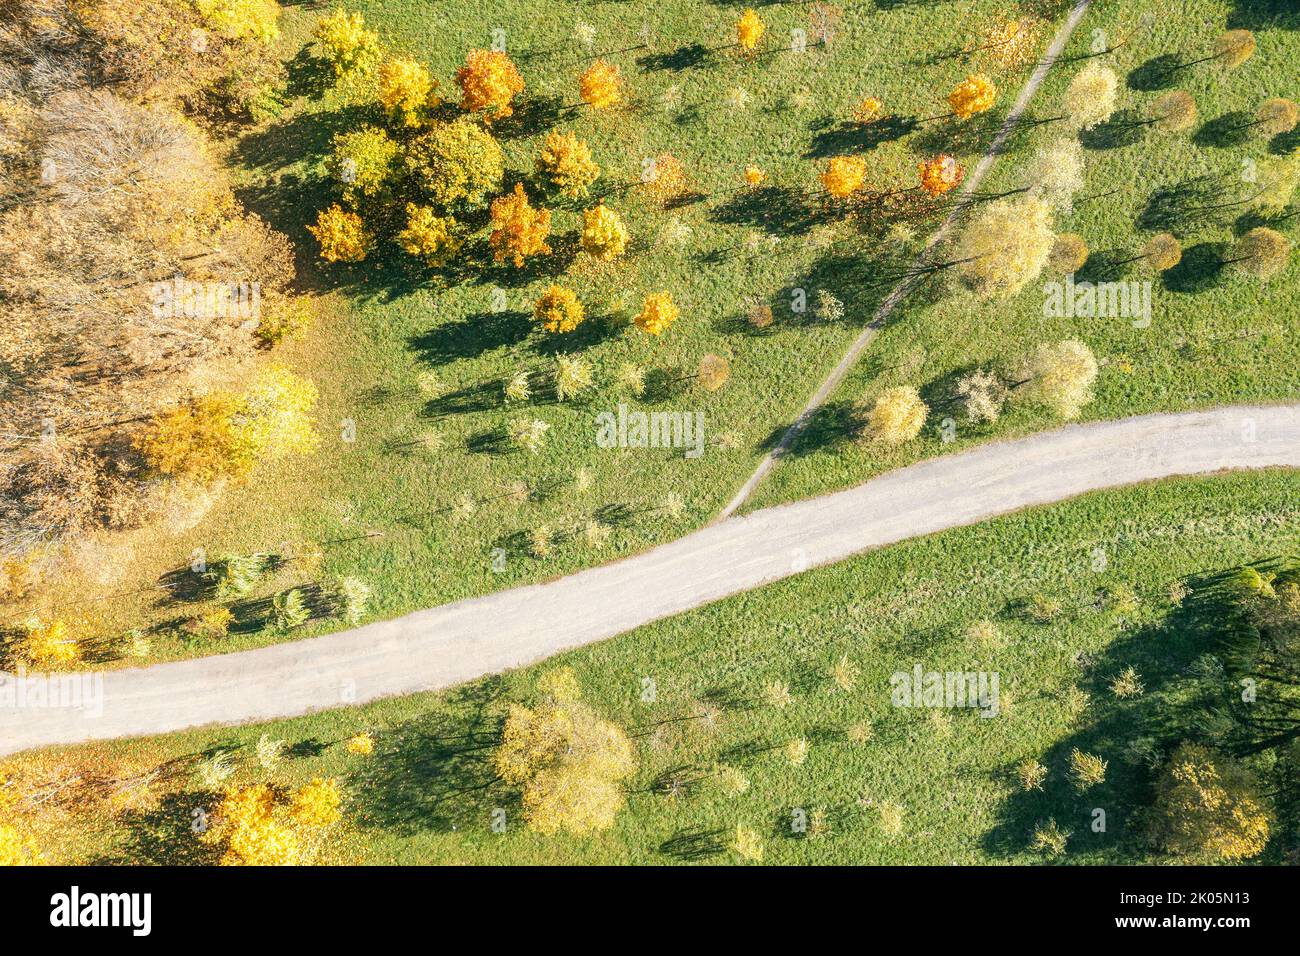 Fussgängerweg im hellen Herbstpark. Sonniger Tag. Top down Luftbild. Stockfoto